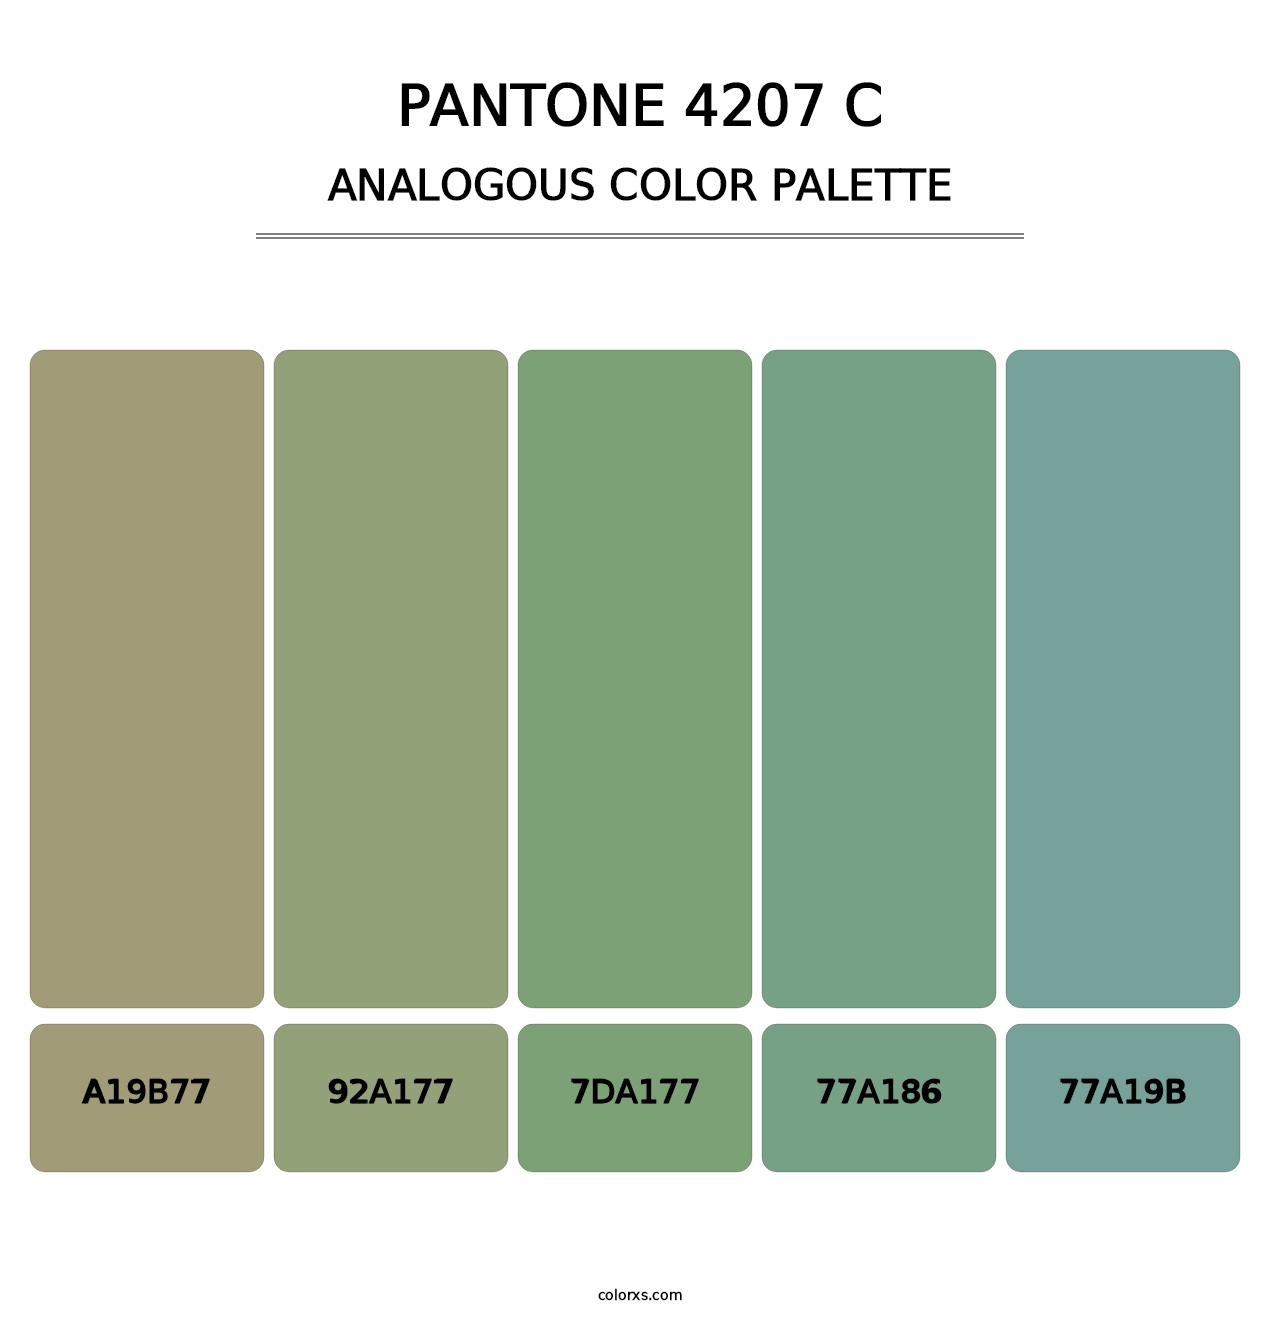 PANTONE 4207 C - Analogous Color Palette